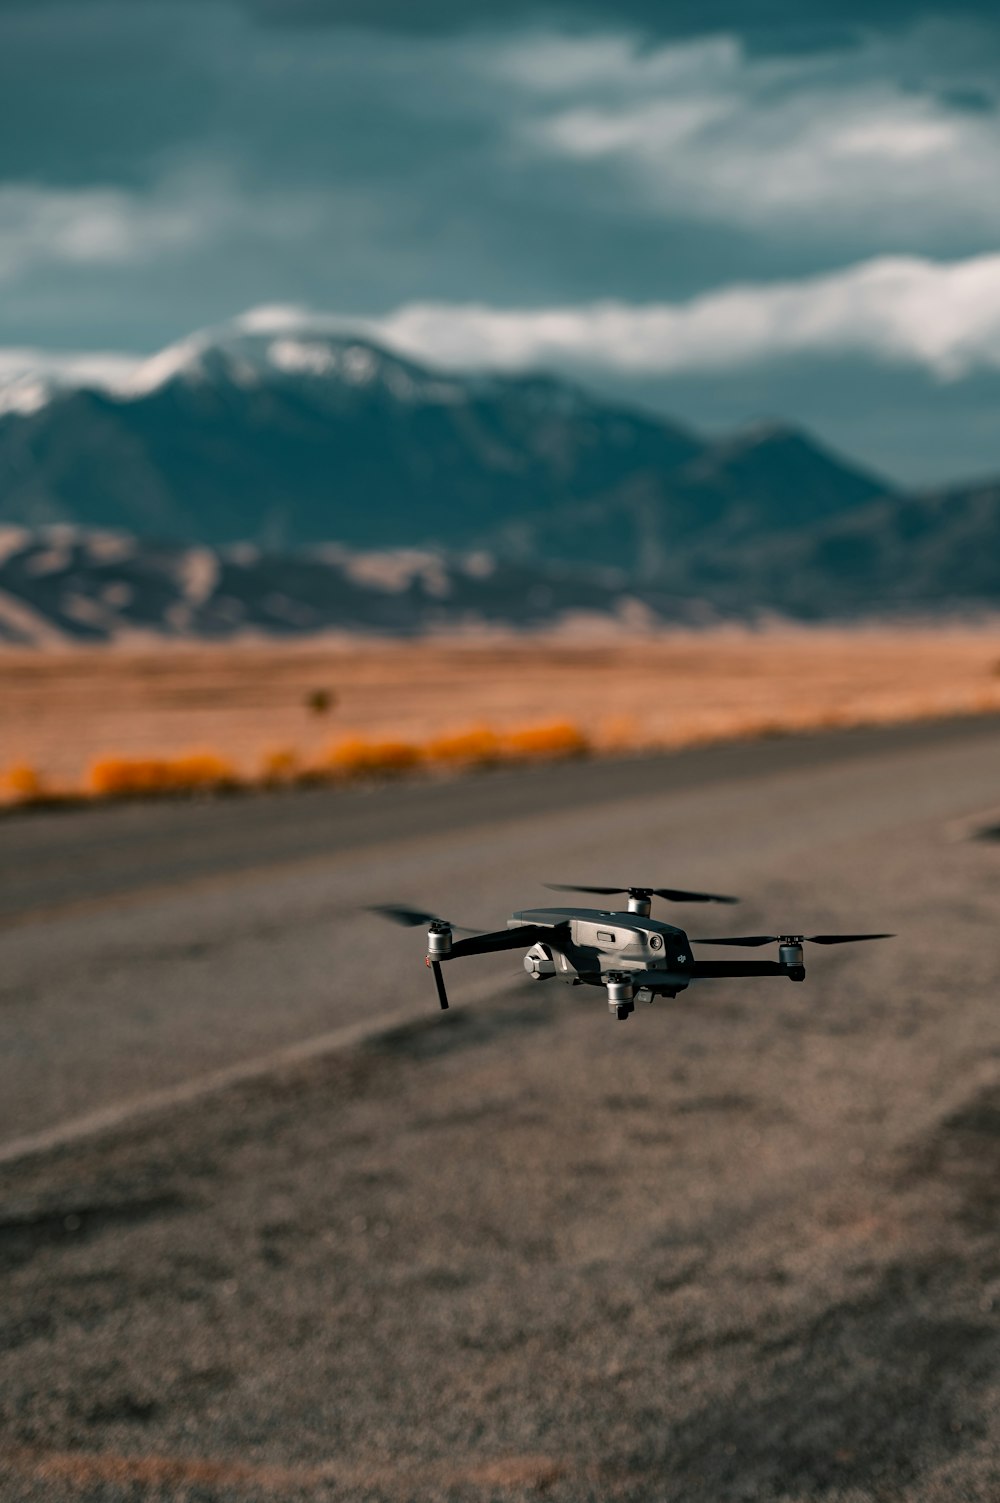 Drone in bianco e nero che vola sopra il campo marrone durante il giorno